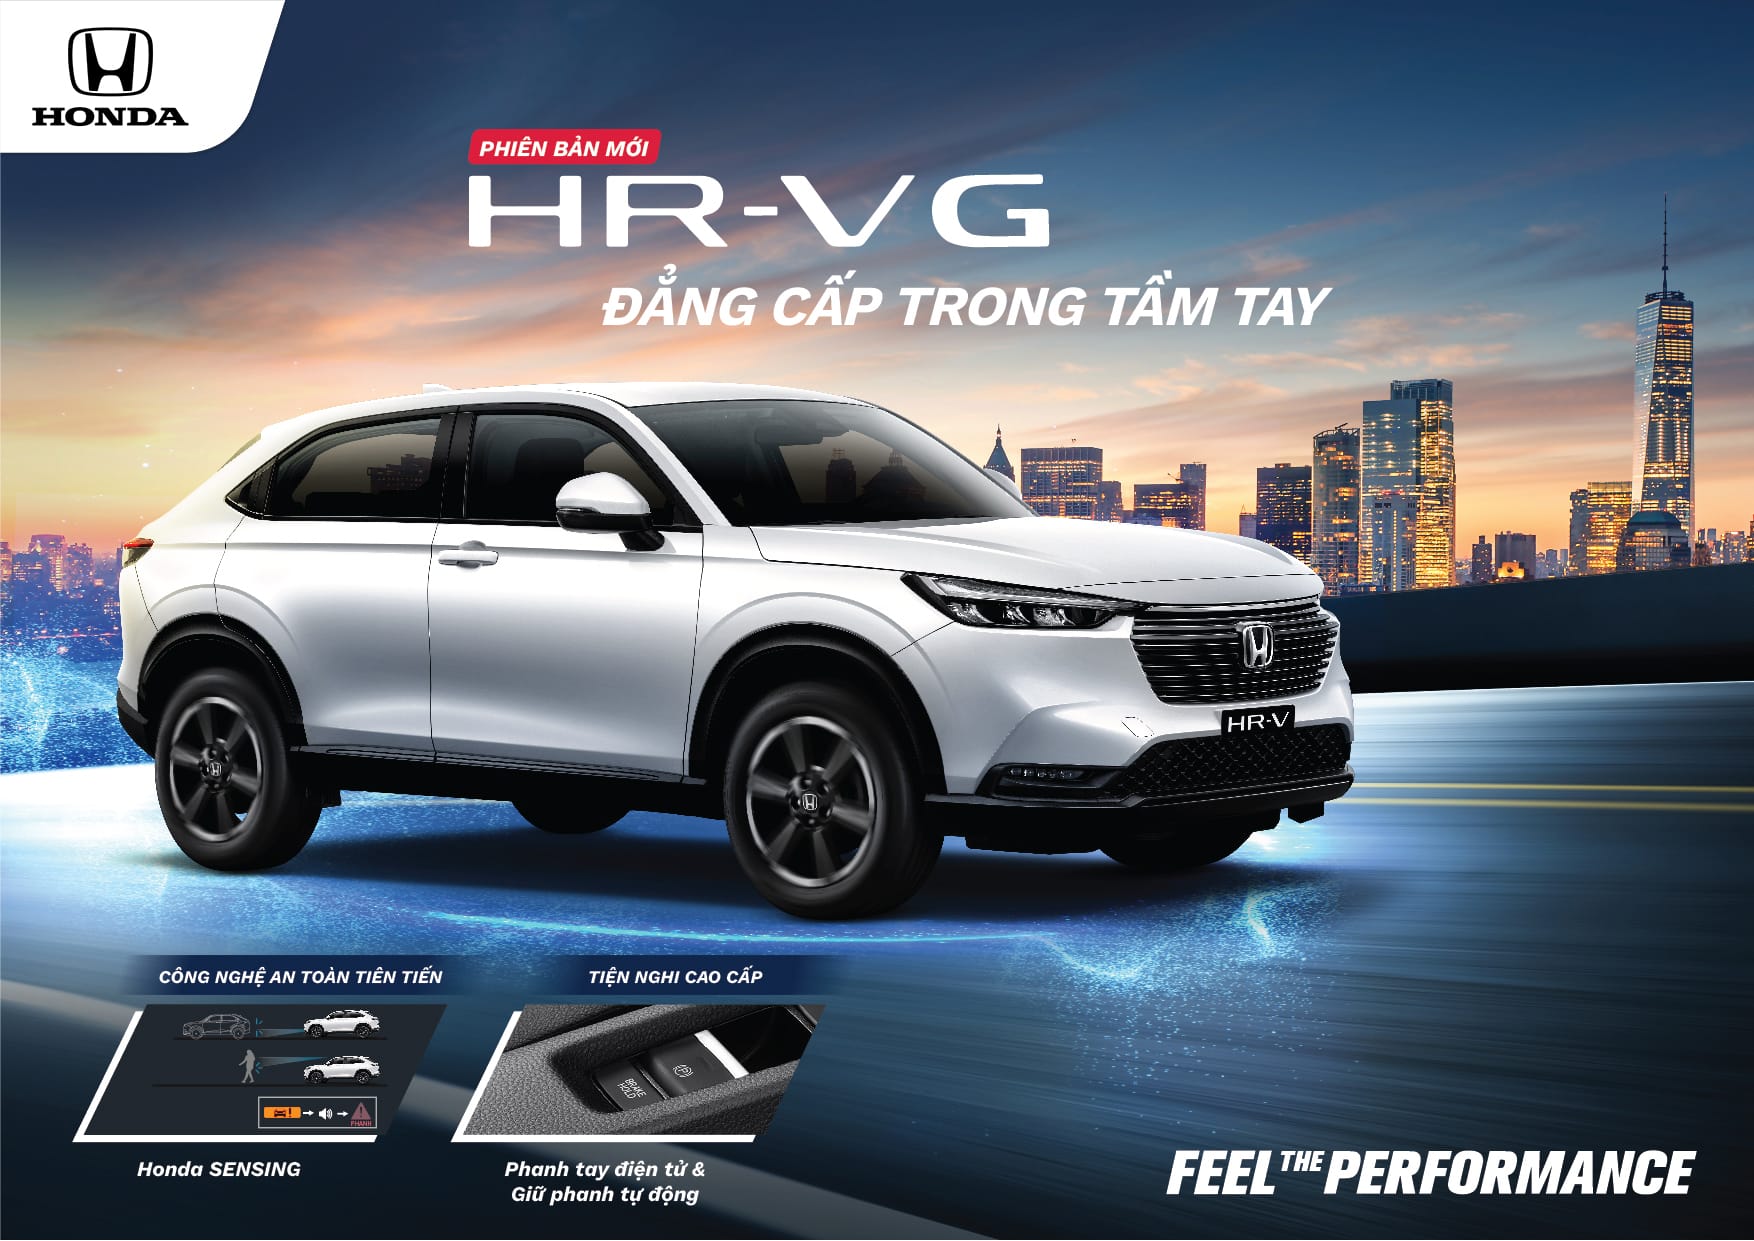 Honda HR-V G bản tiêu chuẩn giá 699 triệu đồng chính thức ra mắt | Honda Ô tô Khánh Hòa - Nha Trang | Hotline 0905 069 259